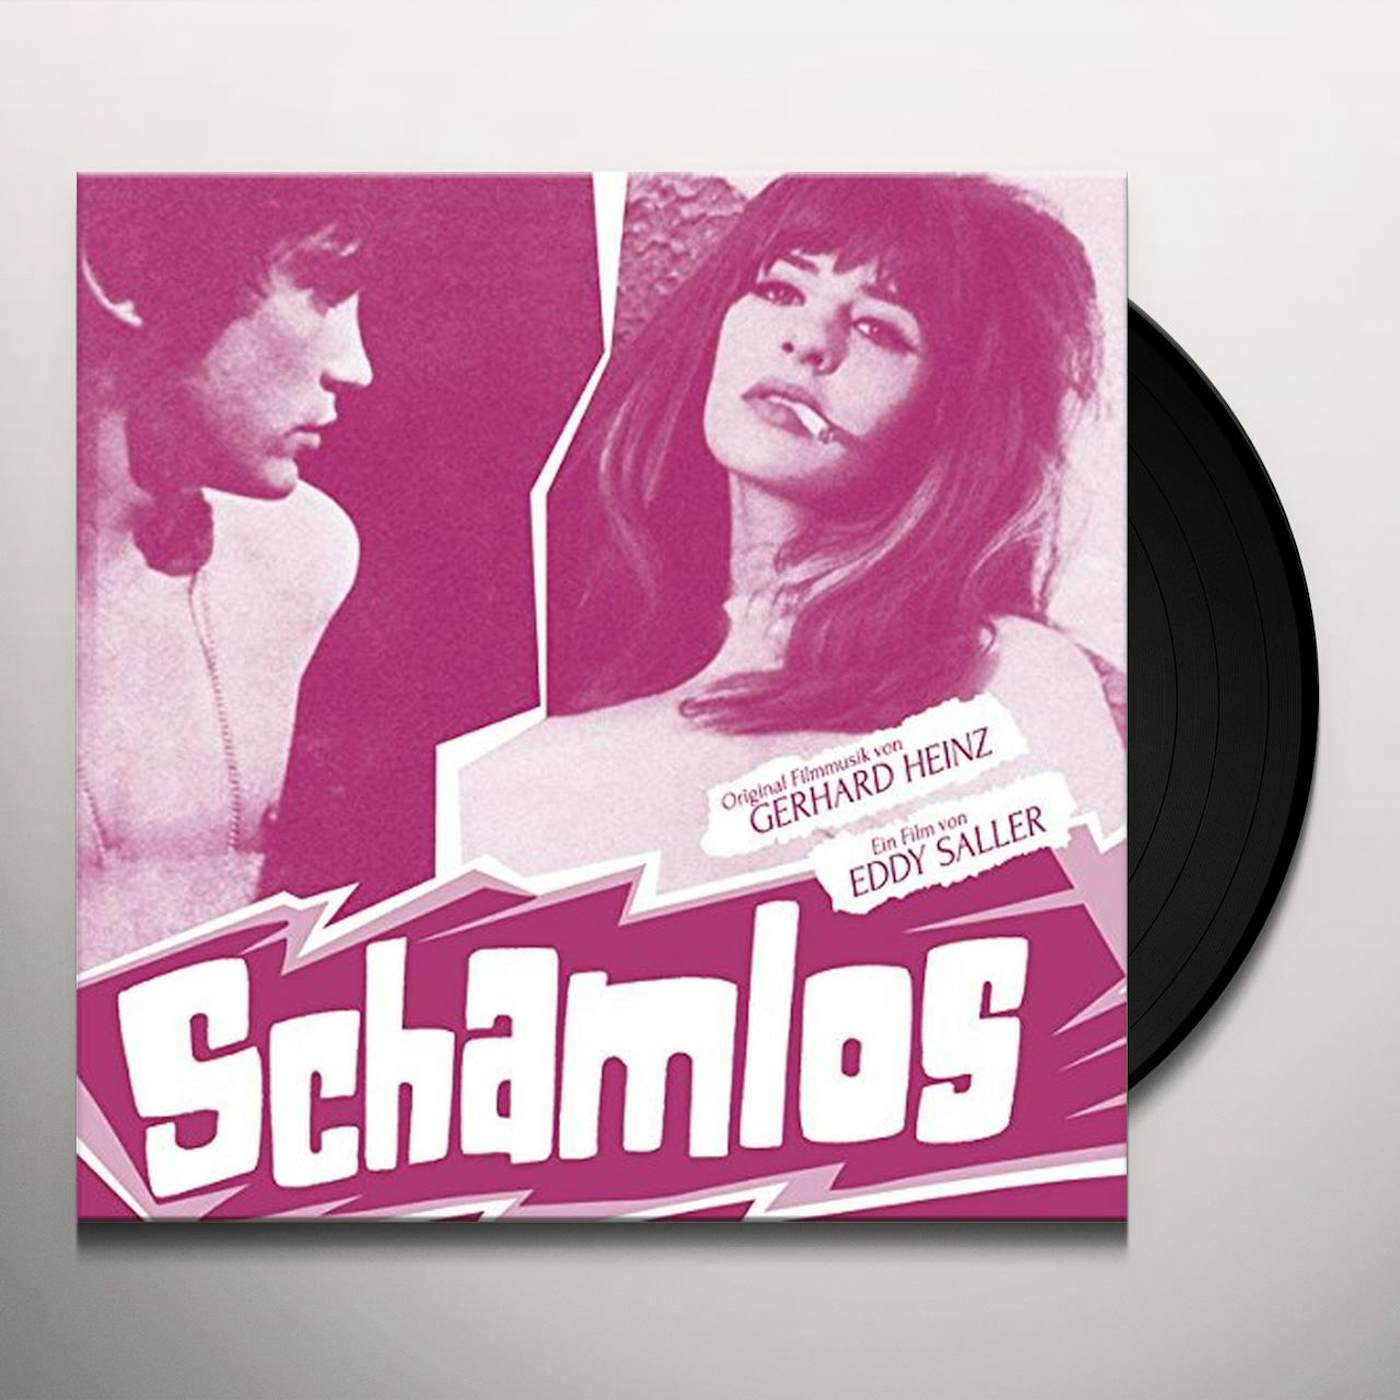 Gerhard Heinz Schamlos Vinyl Record